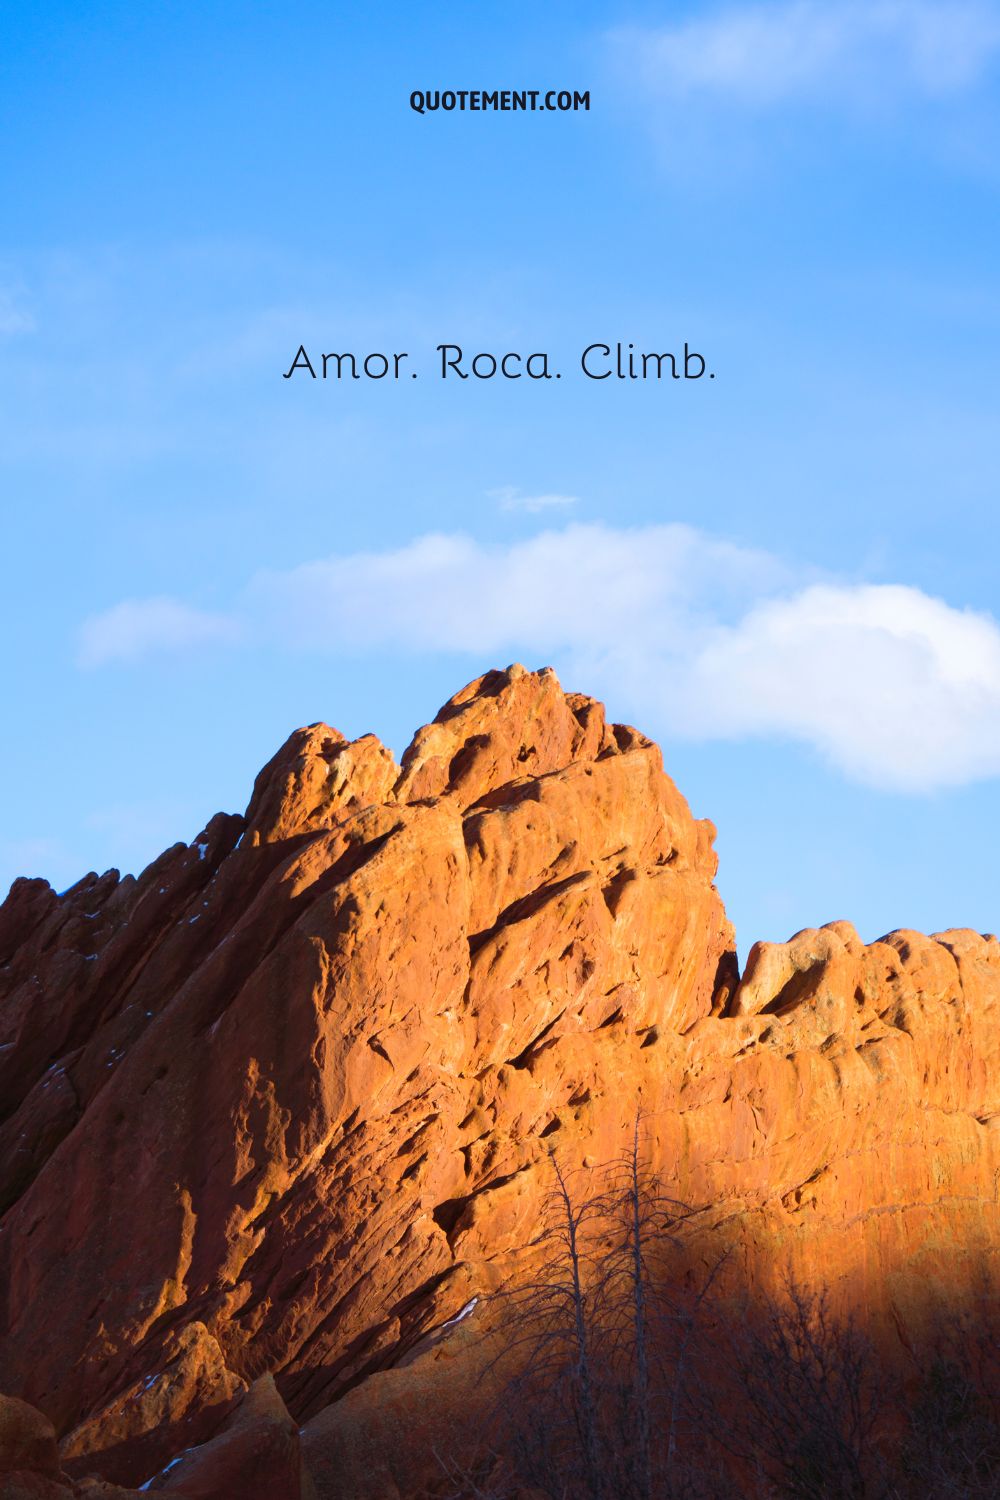 El amor. Rock. Climb.